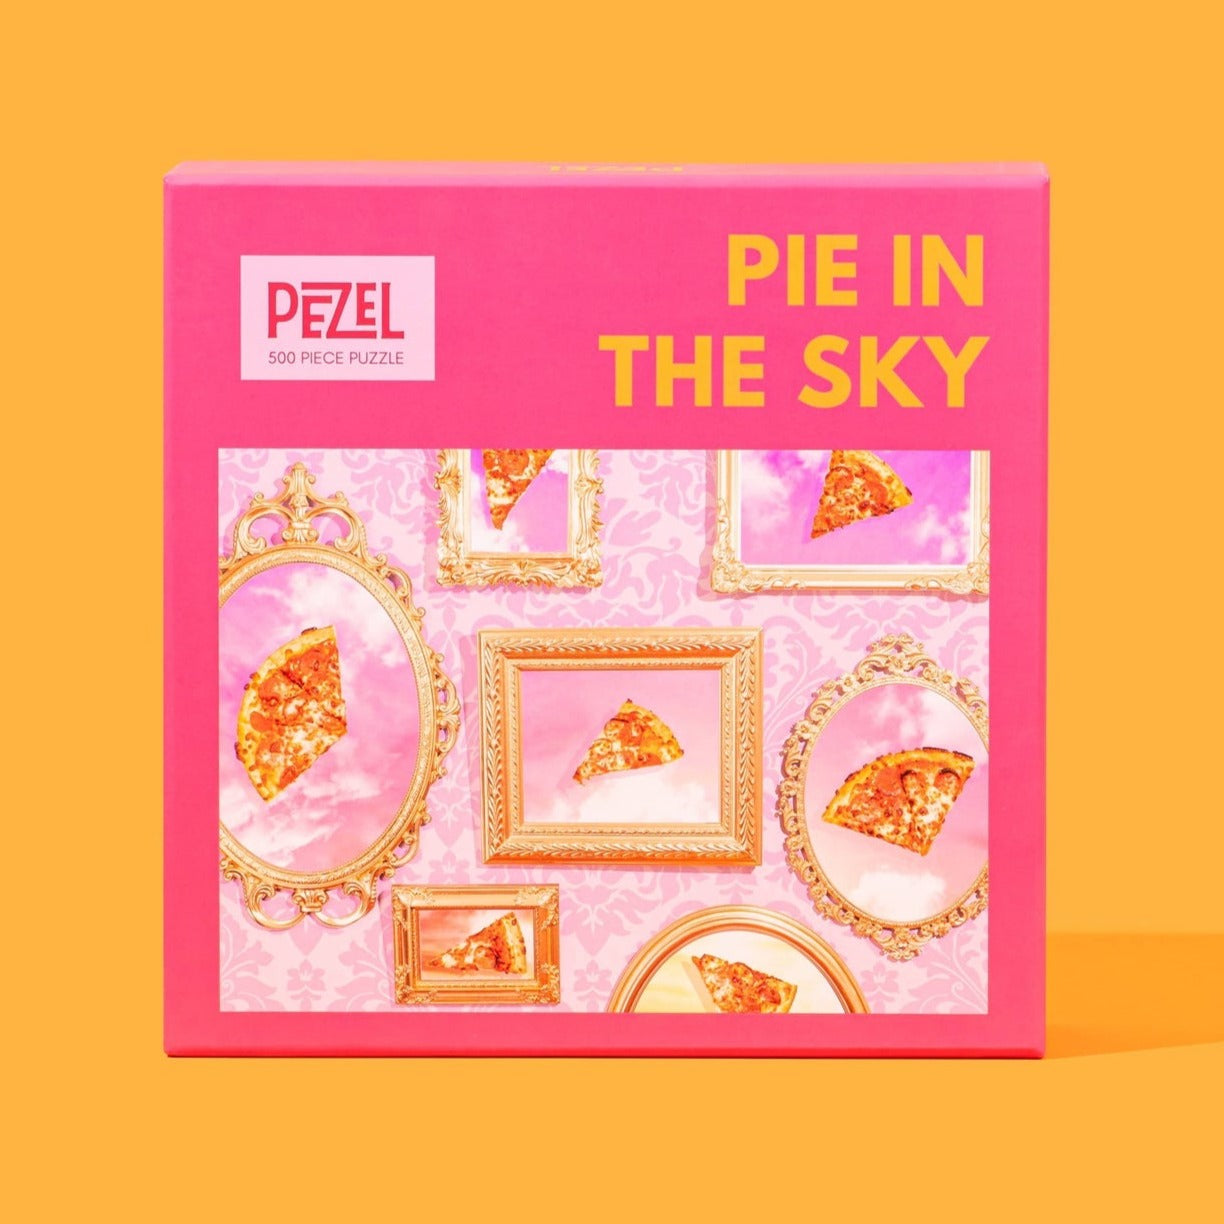 Pie in the Sky | 500 Piece Jigsaw Puzzle